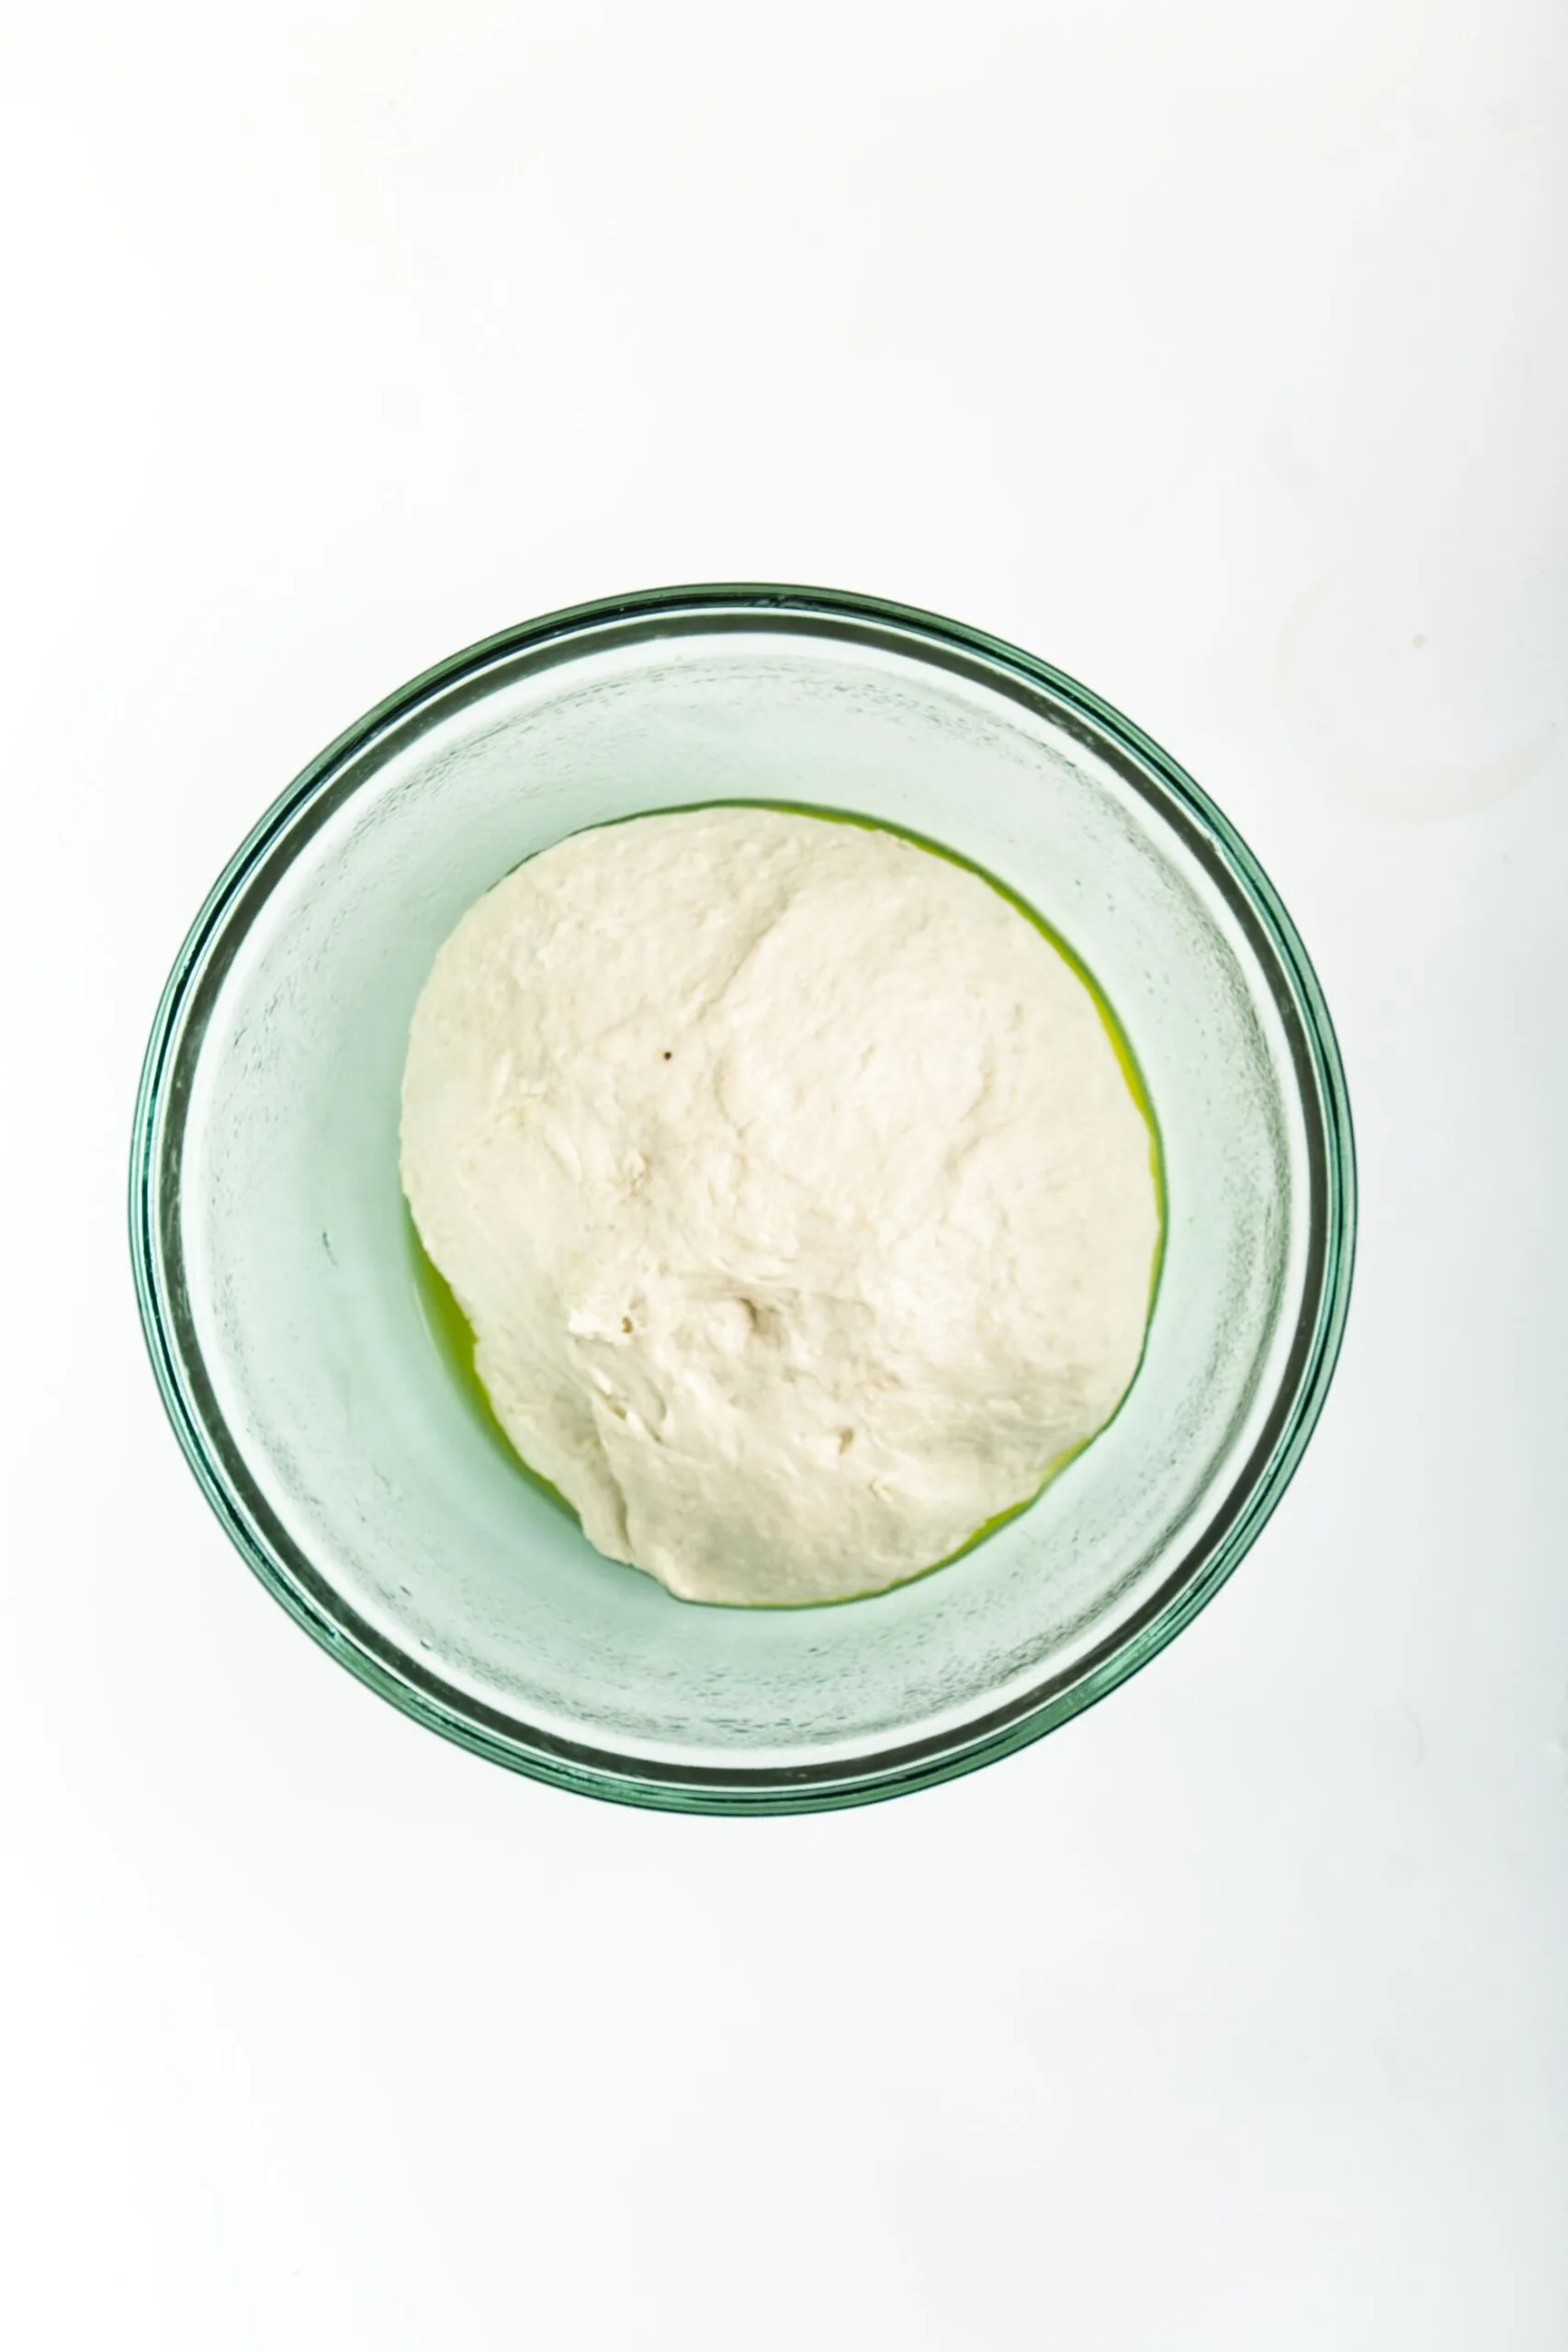 mini pita bread dough in a bowl